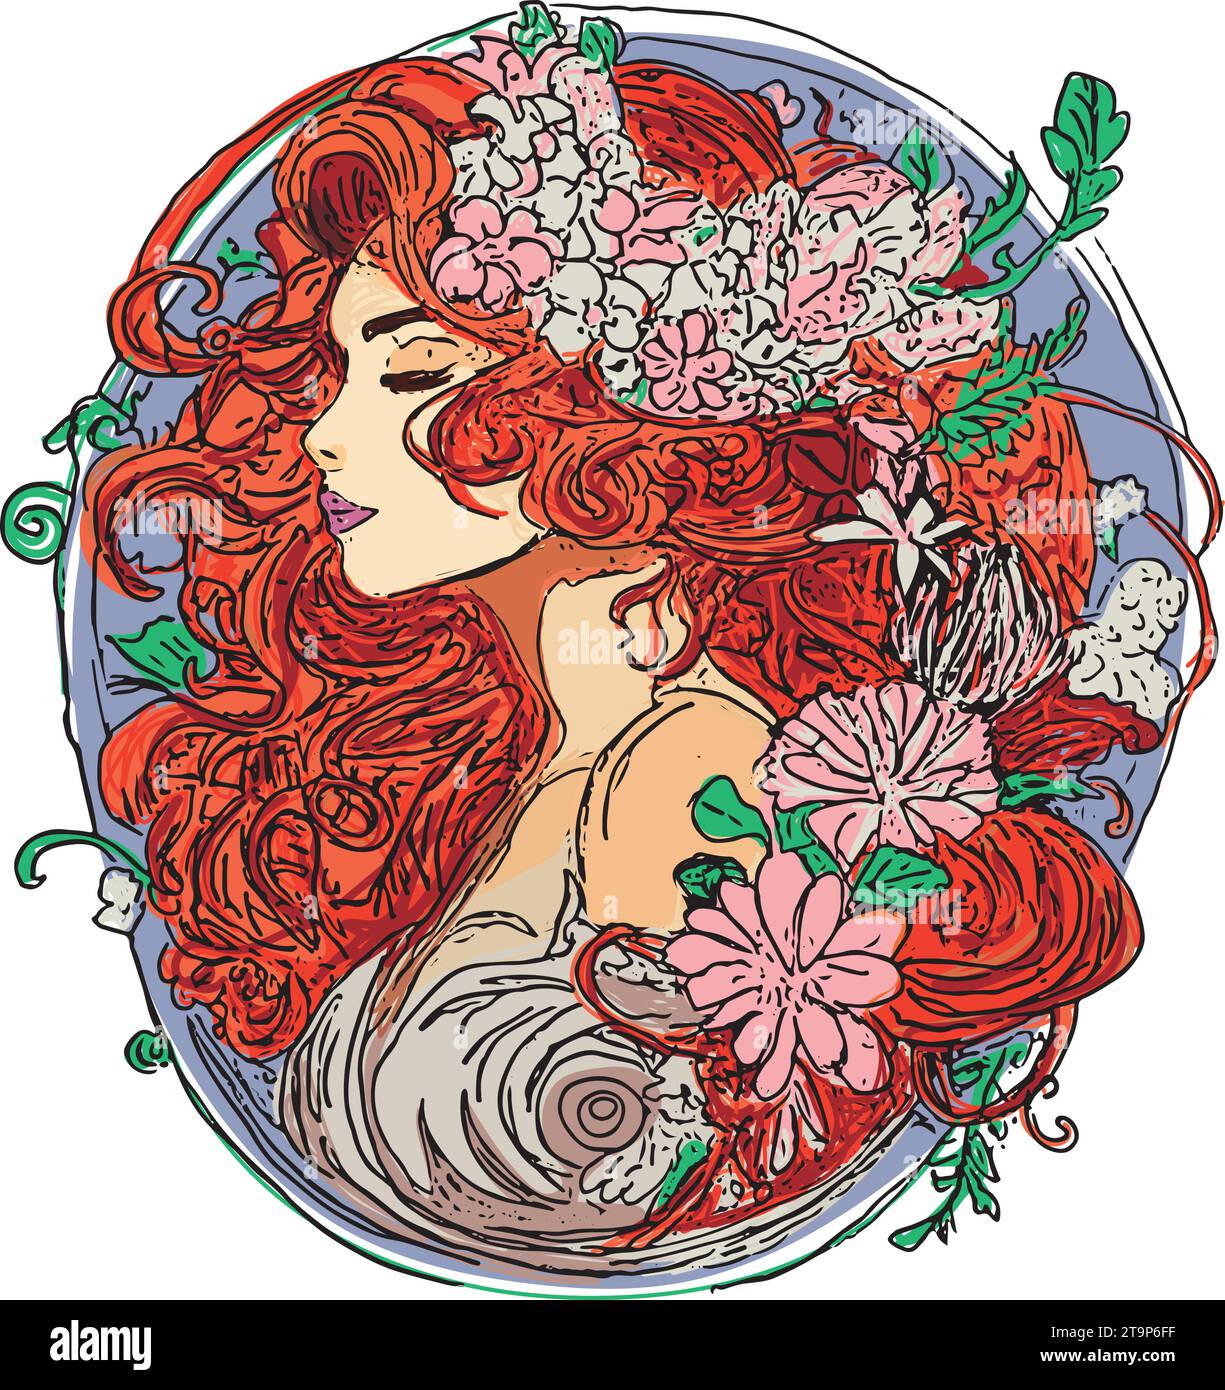 Vettore disegnato a mano di una donna con lunghi capelli rossi, fiori, composizione ovale Illustrazione Vettoriale